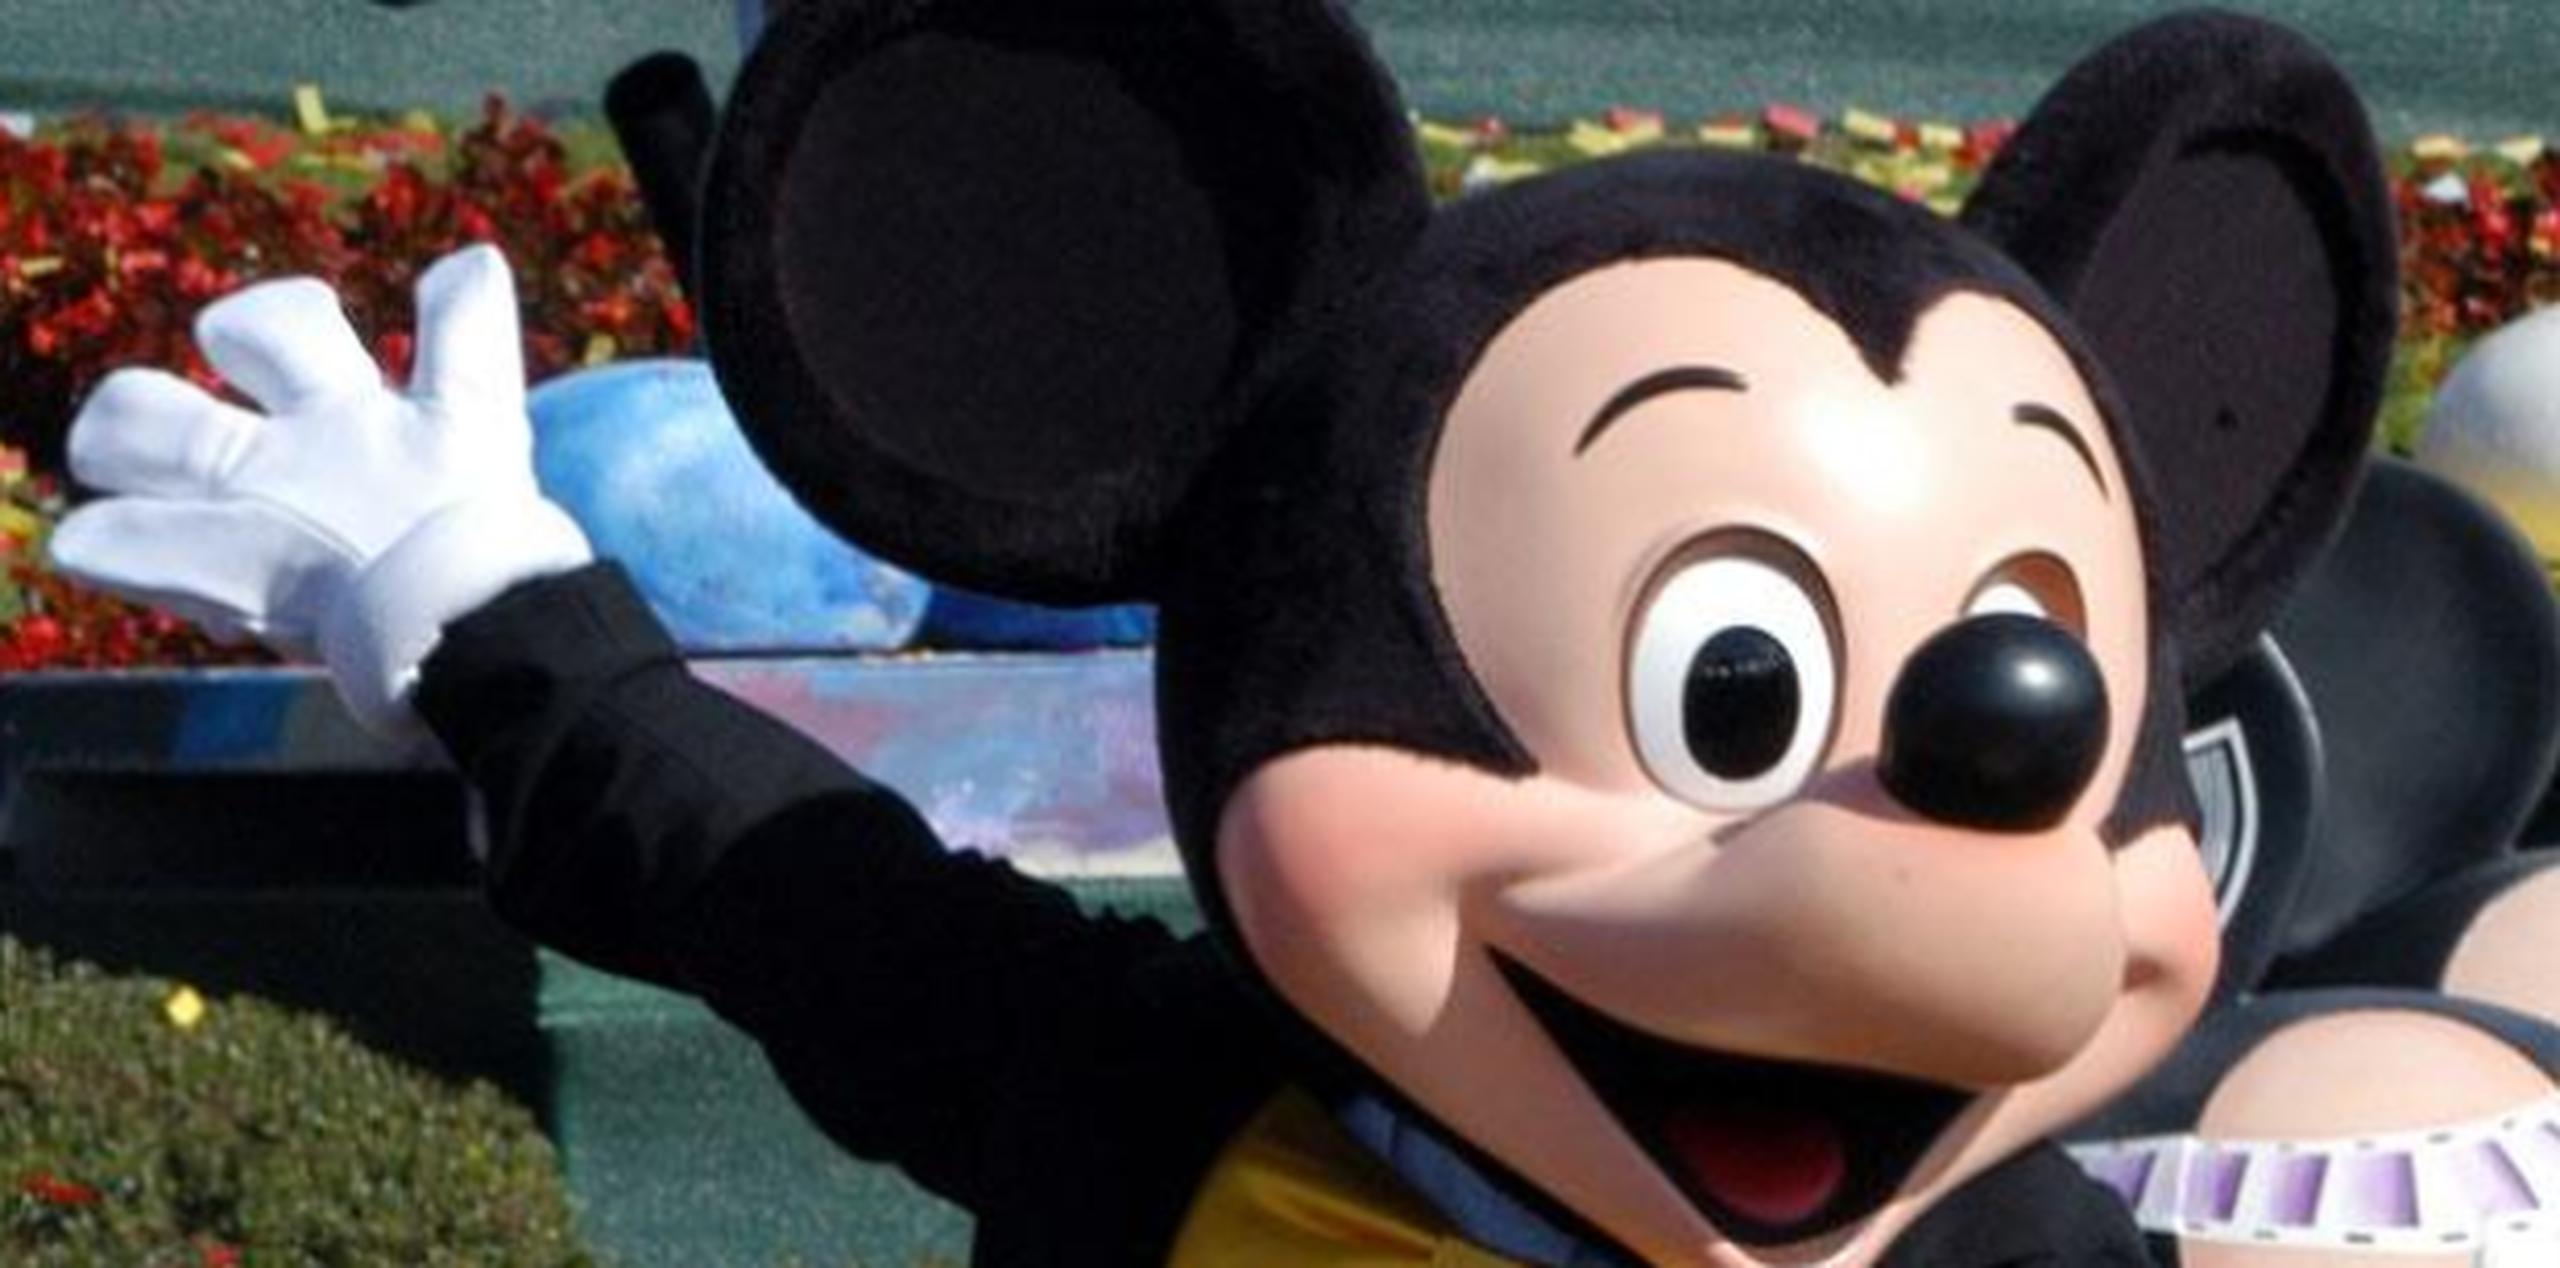 Disney exhorta a los fanáticos del personaje a usar el #HappyBirthdayMickey en las redes sociales para unirse a este evento. (Archivo)

